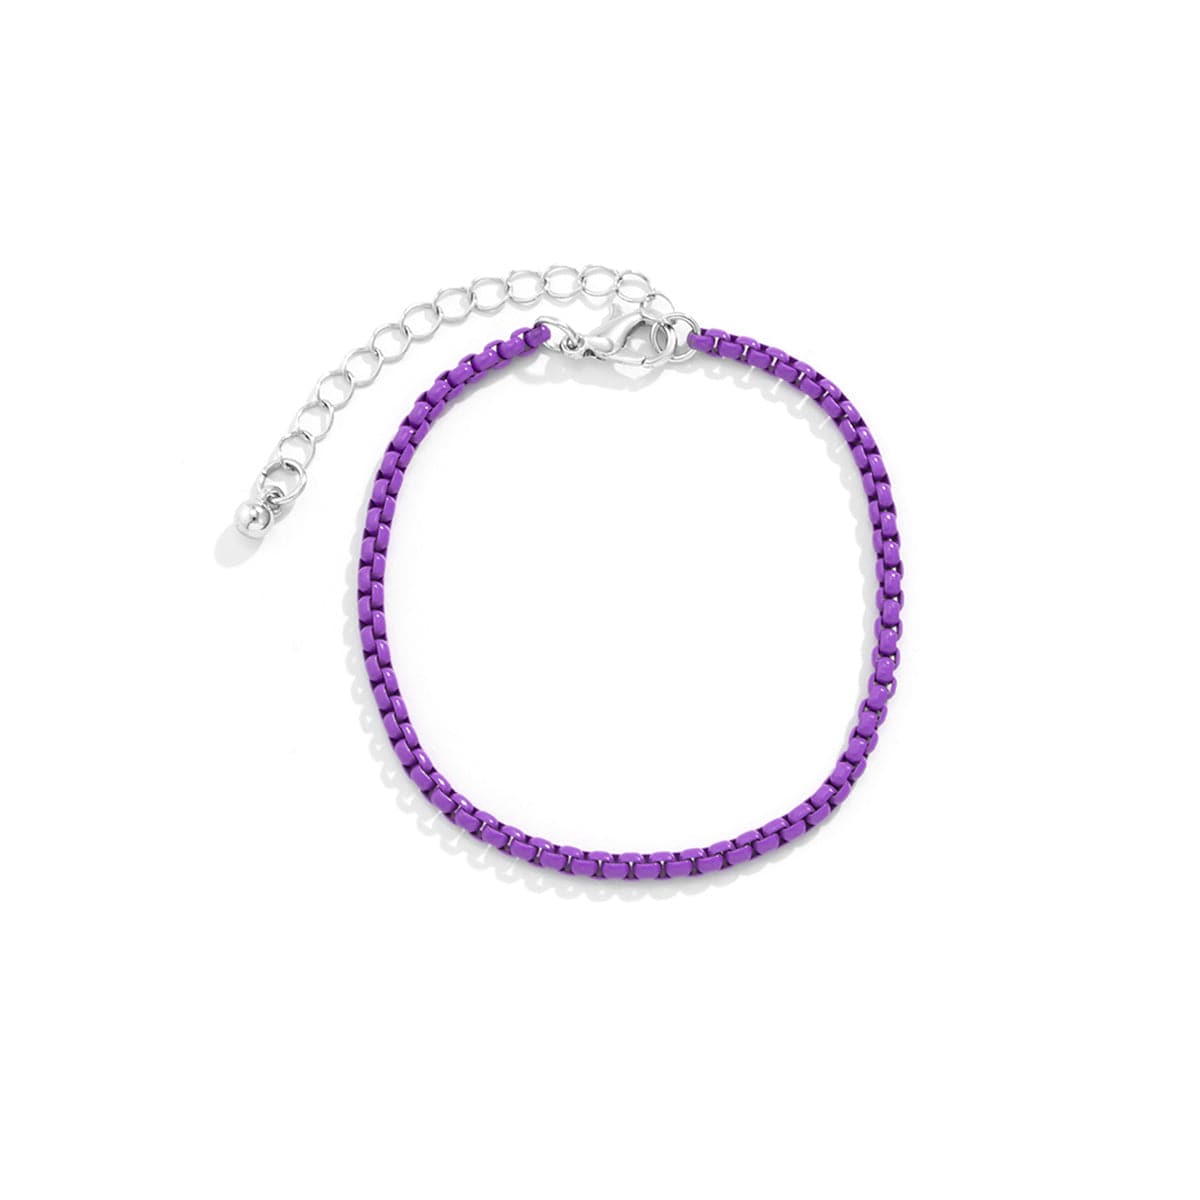 Dark Purple Enamel & Silver-Plated Chain Bracelet